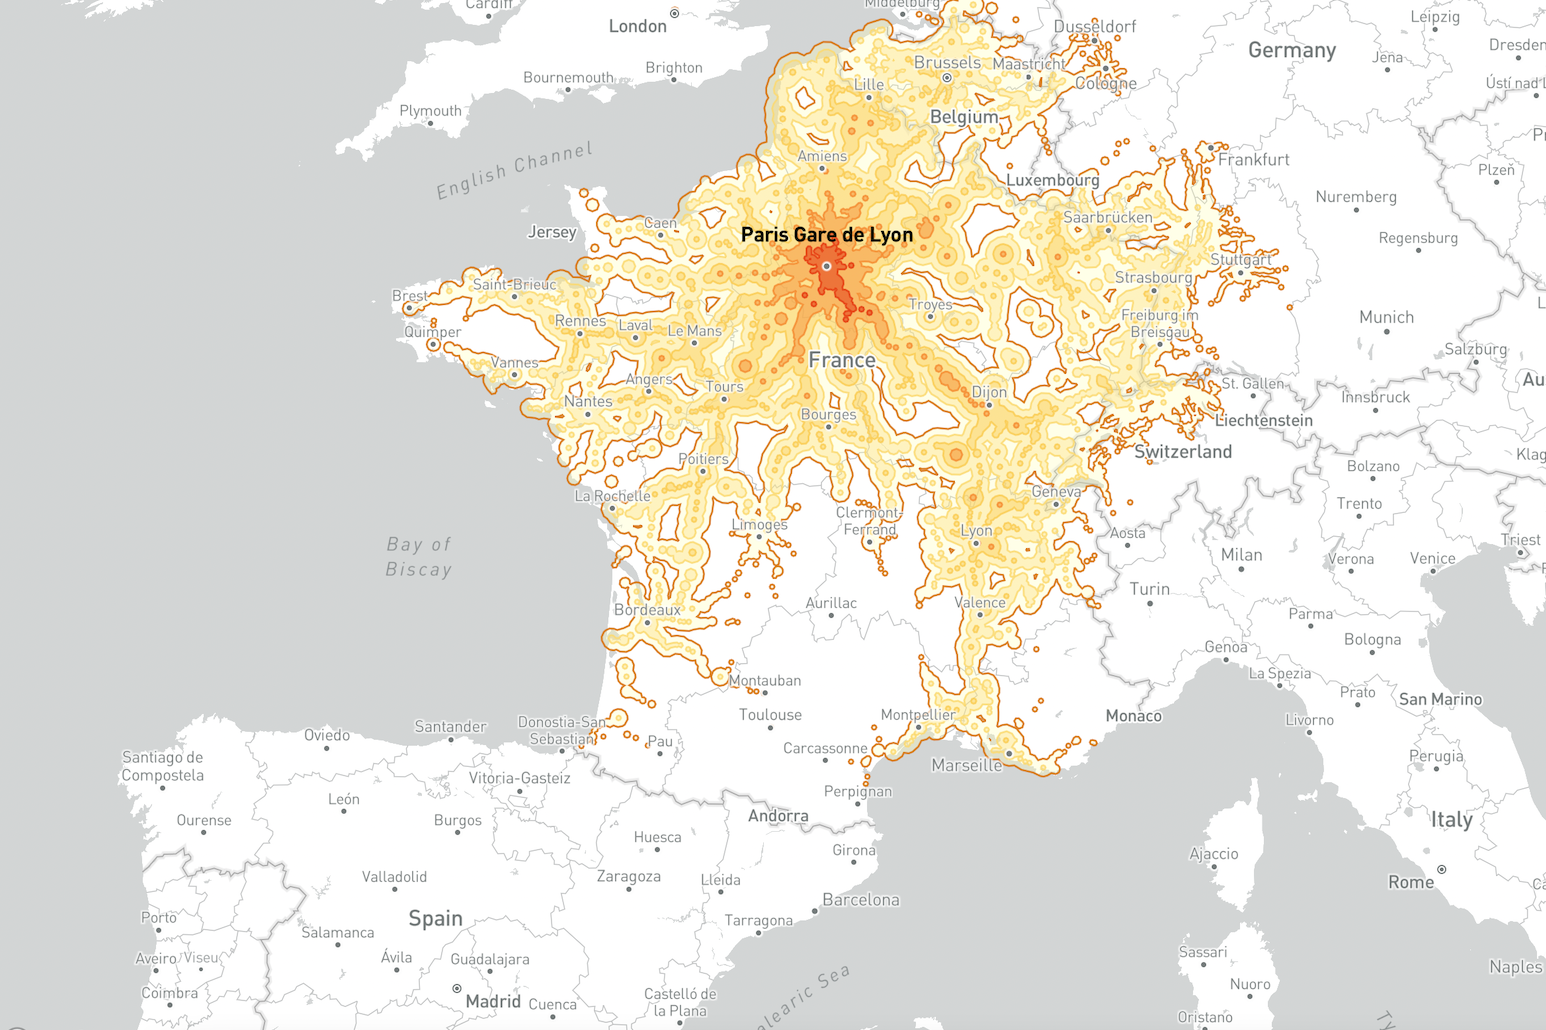 Descubre cuán lejos puedes llegar tras 5 horas en tren desde cualquier ciudad de Europa con este interesante mapa